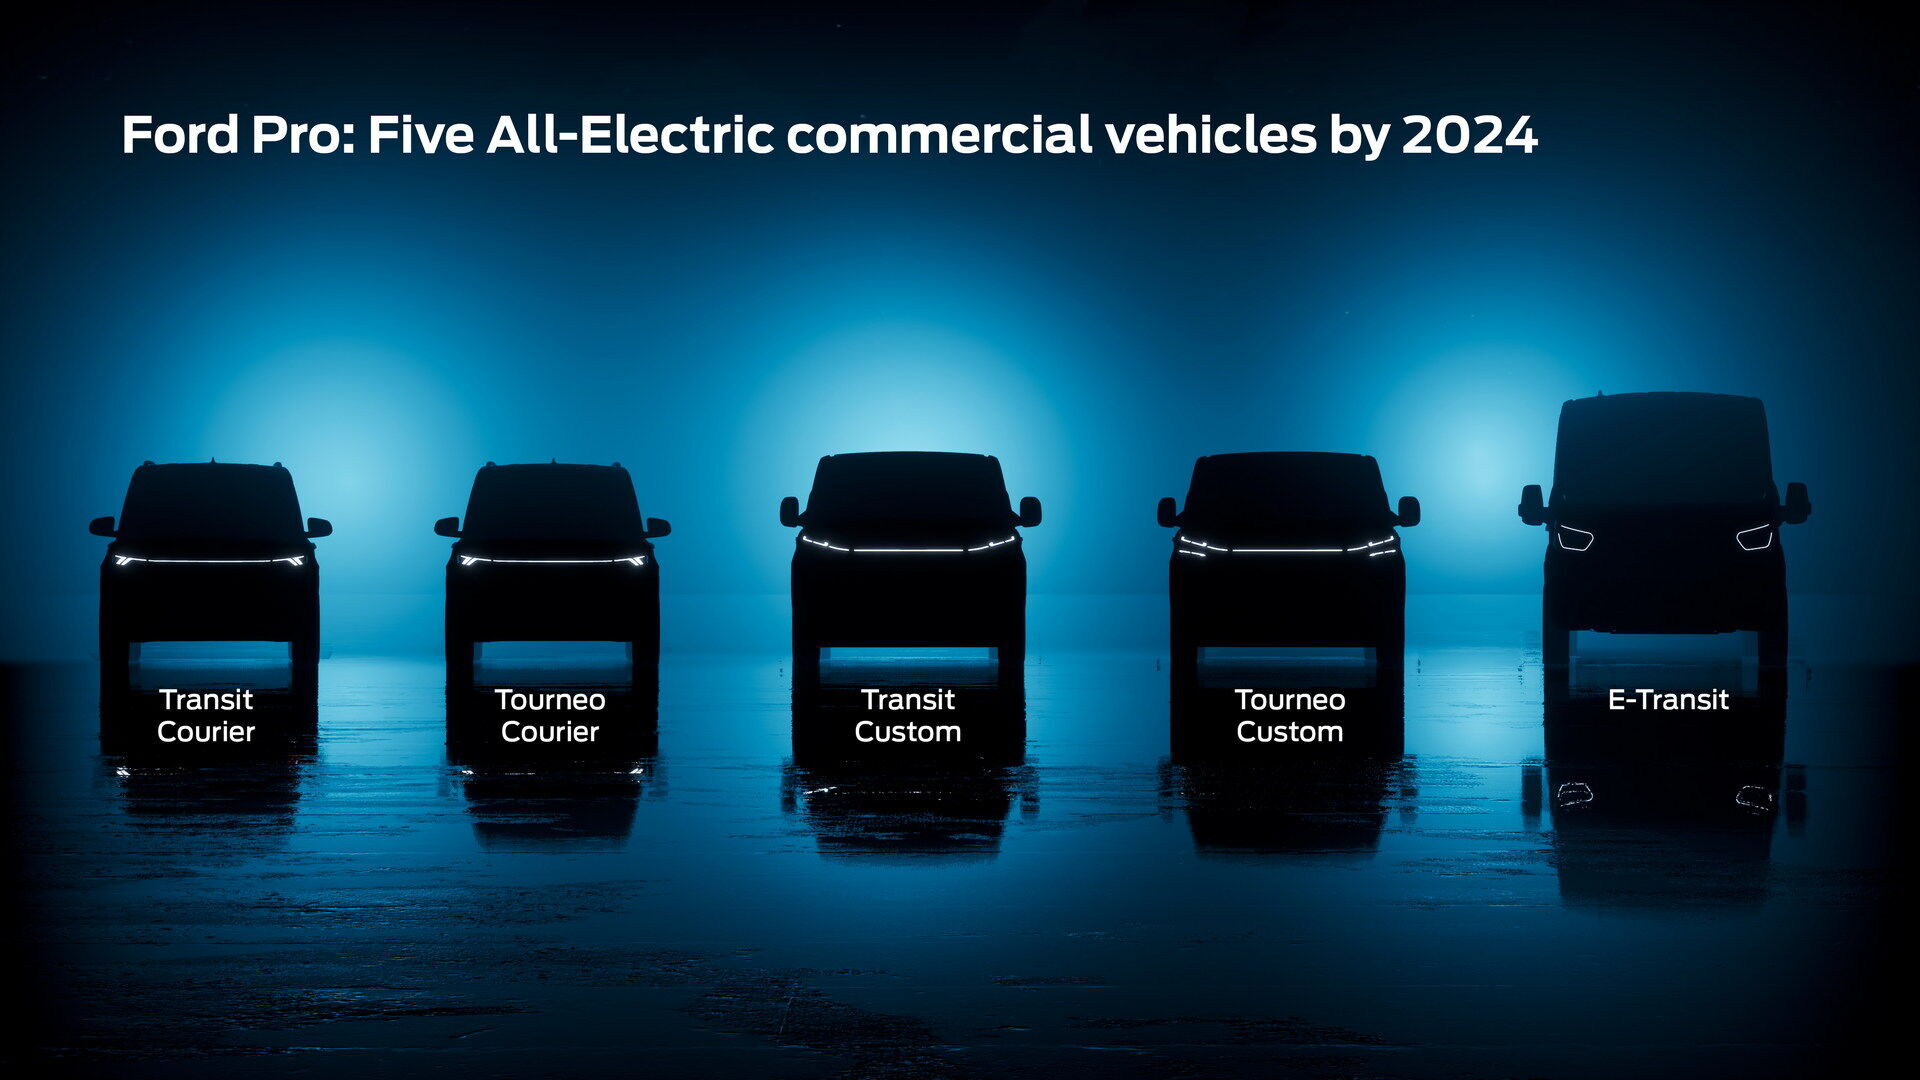 Після дебюту електромобіля E-Transit, що вже випускається підрозділом Ford Pro, компанія планує розширити асортимент "зеленої" продукції